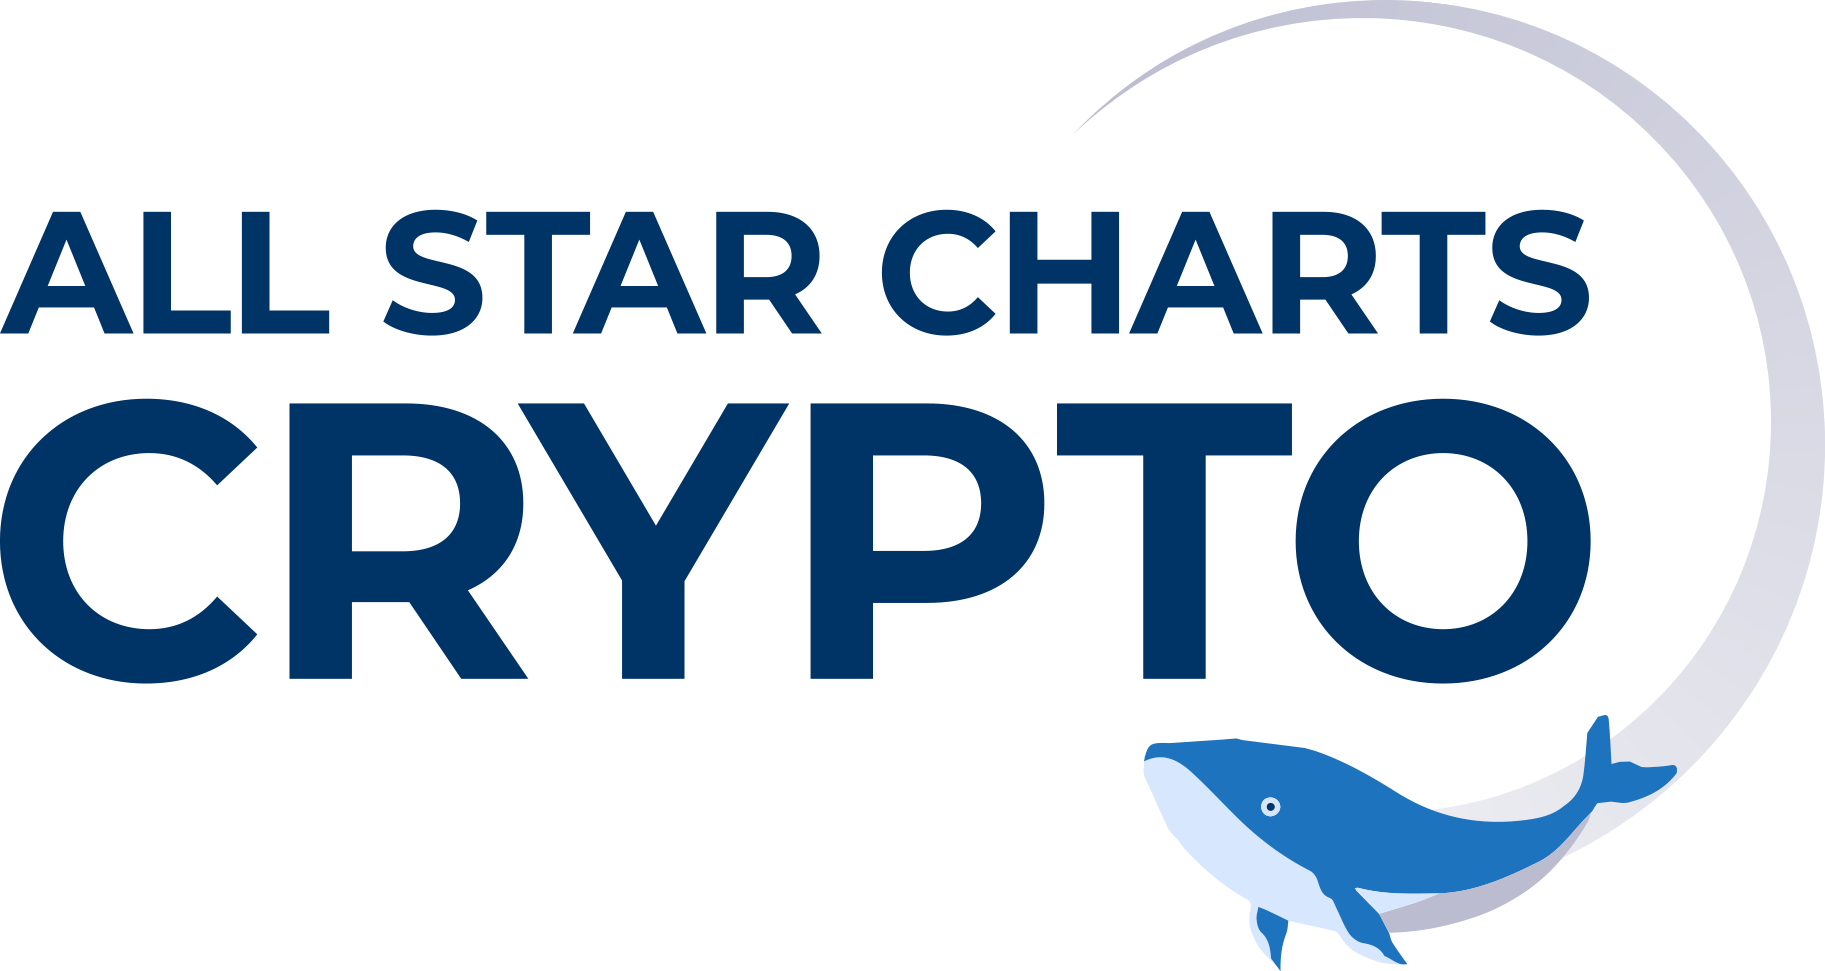 All Star Charts Crypto Logo